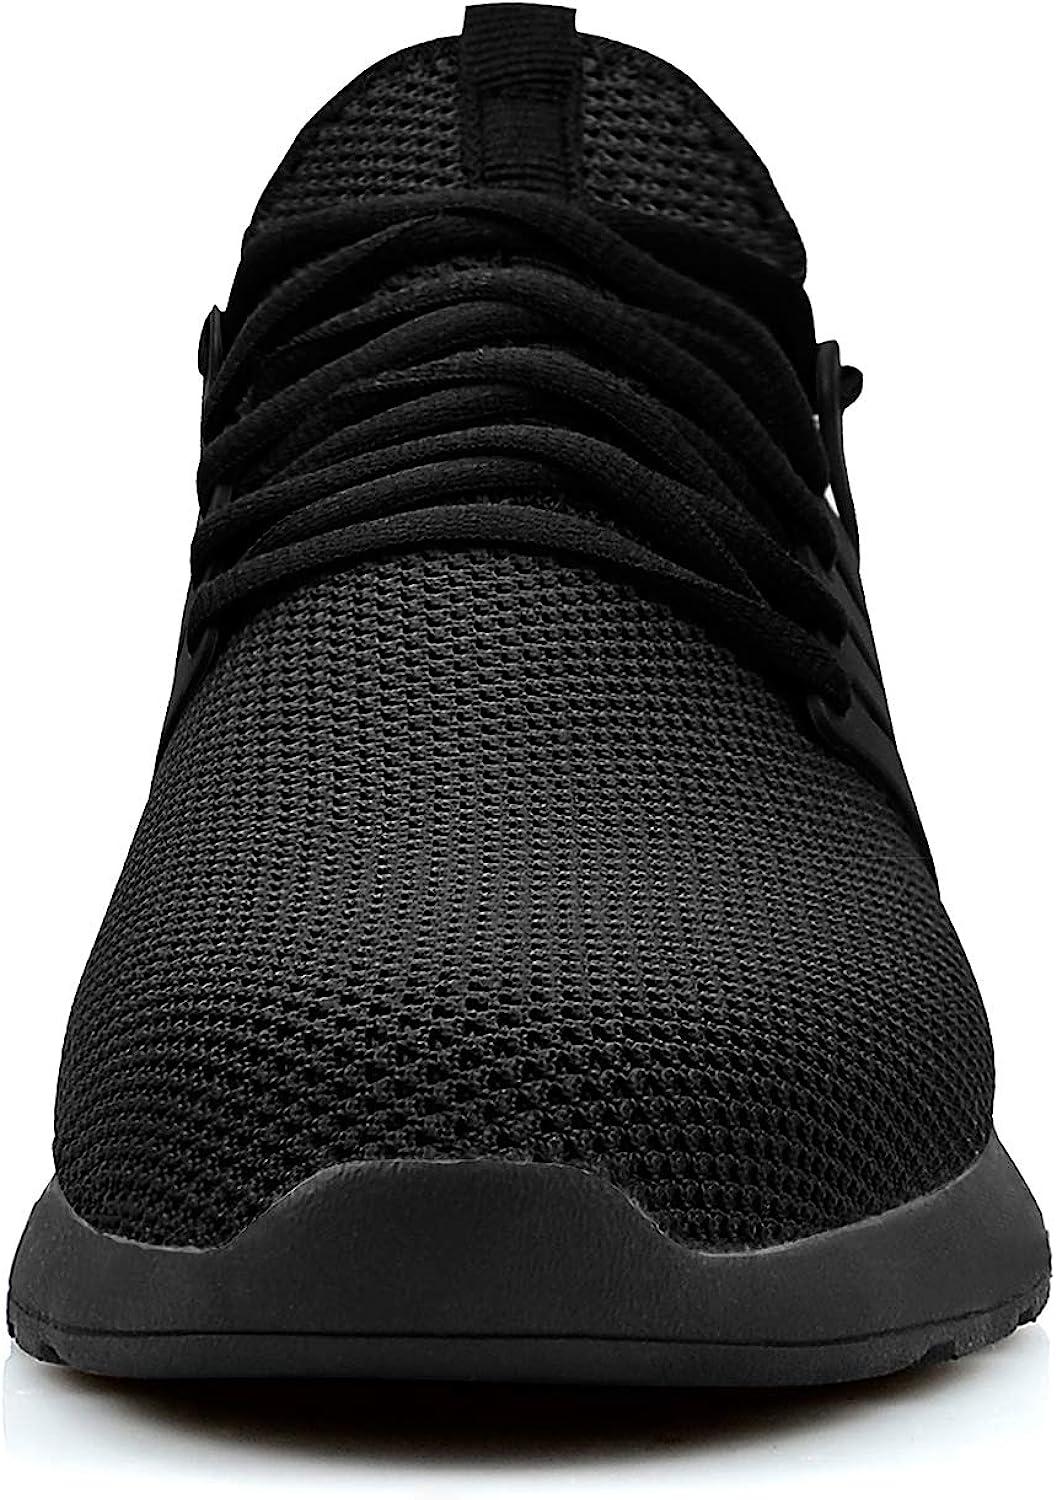 Buy Fitness Basic Men'S Sports Shoes - Black/White Online | Decathlon